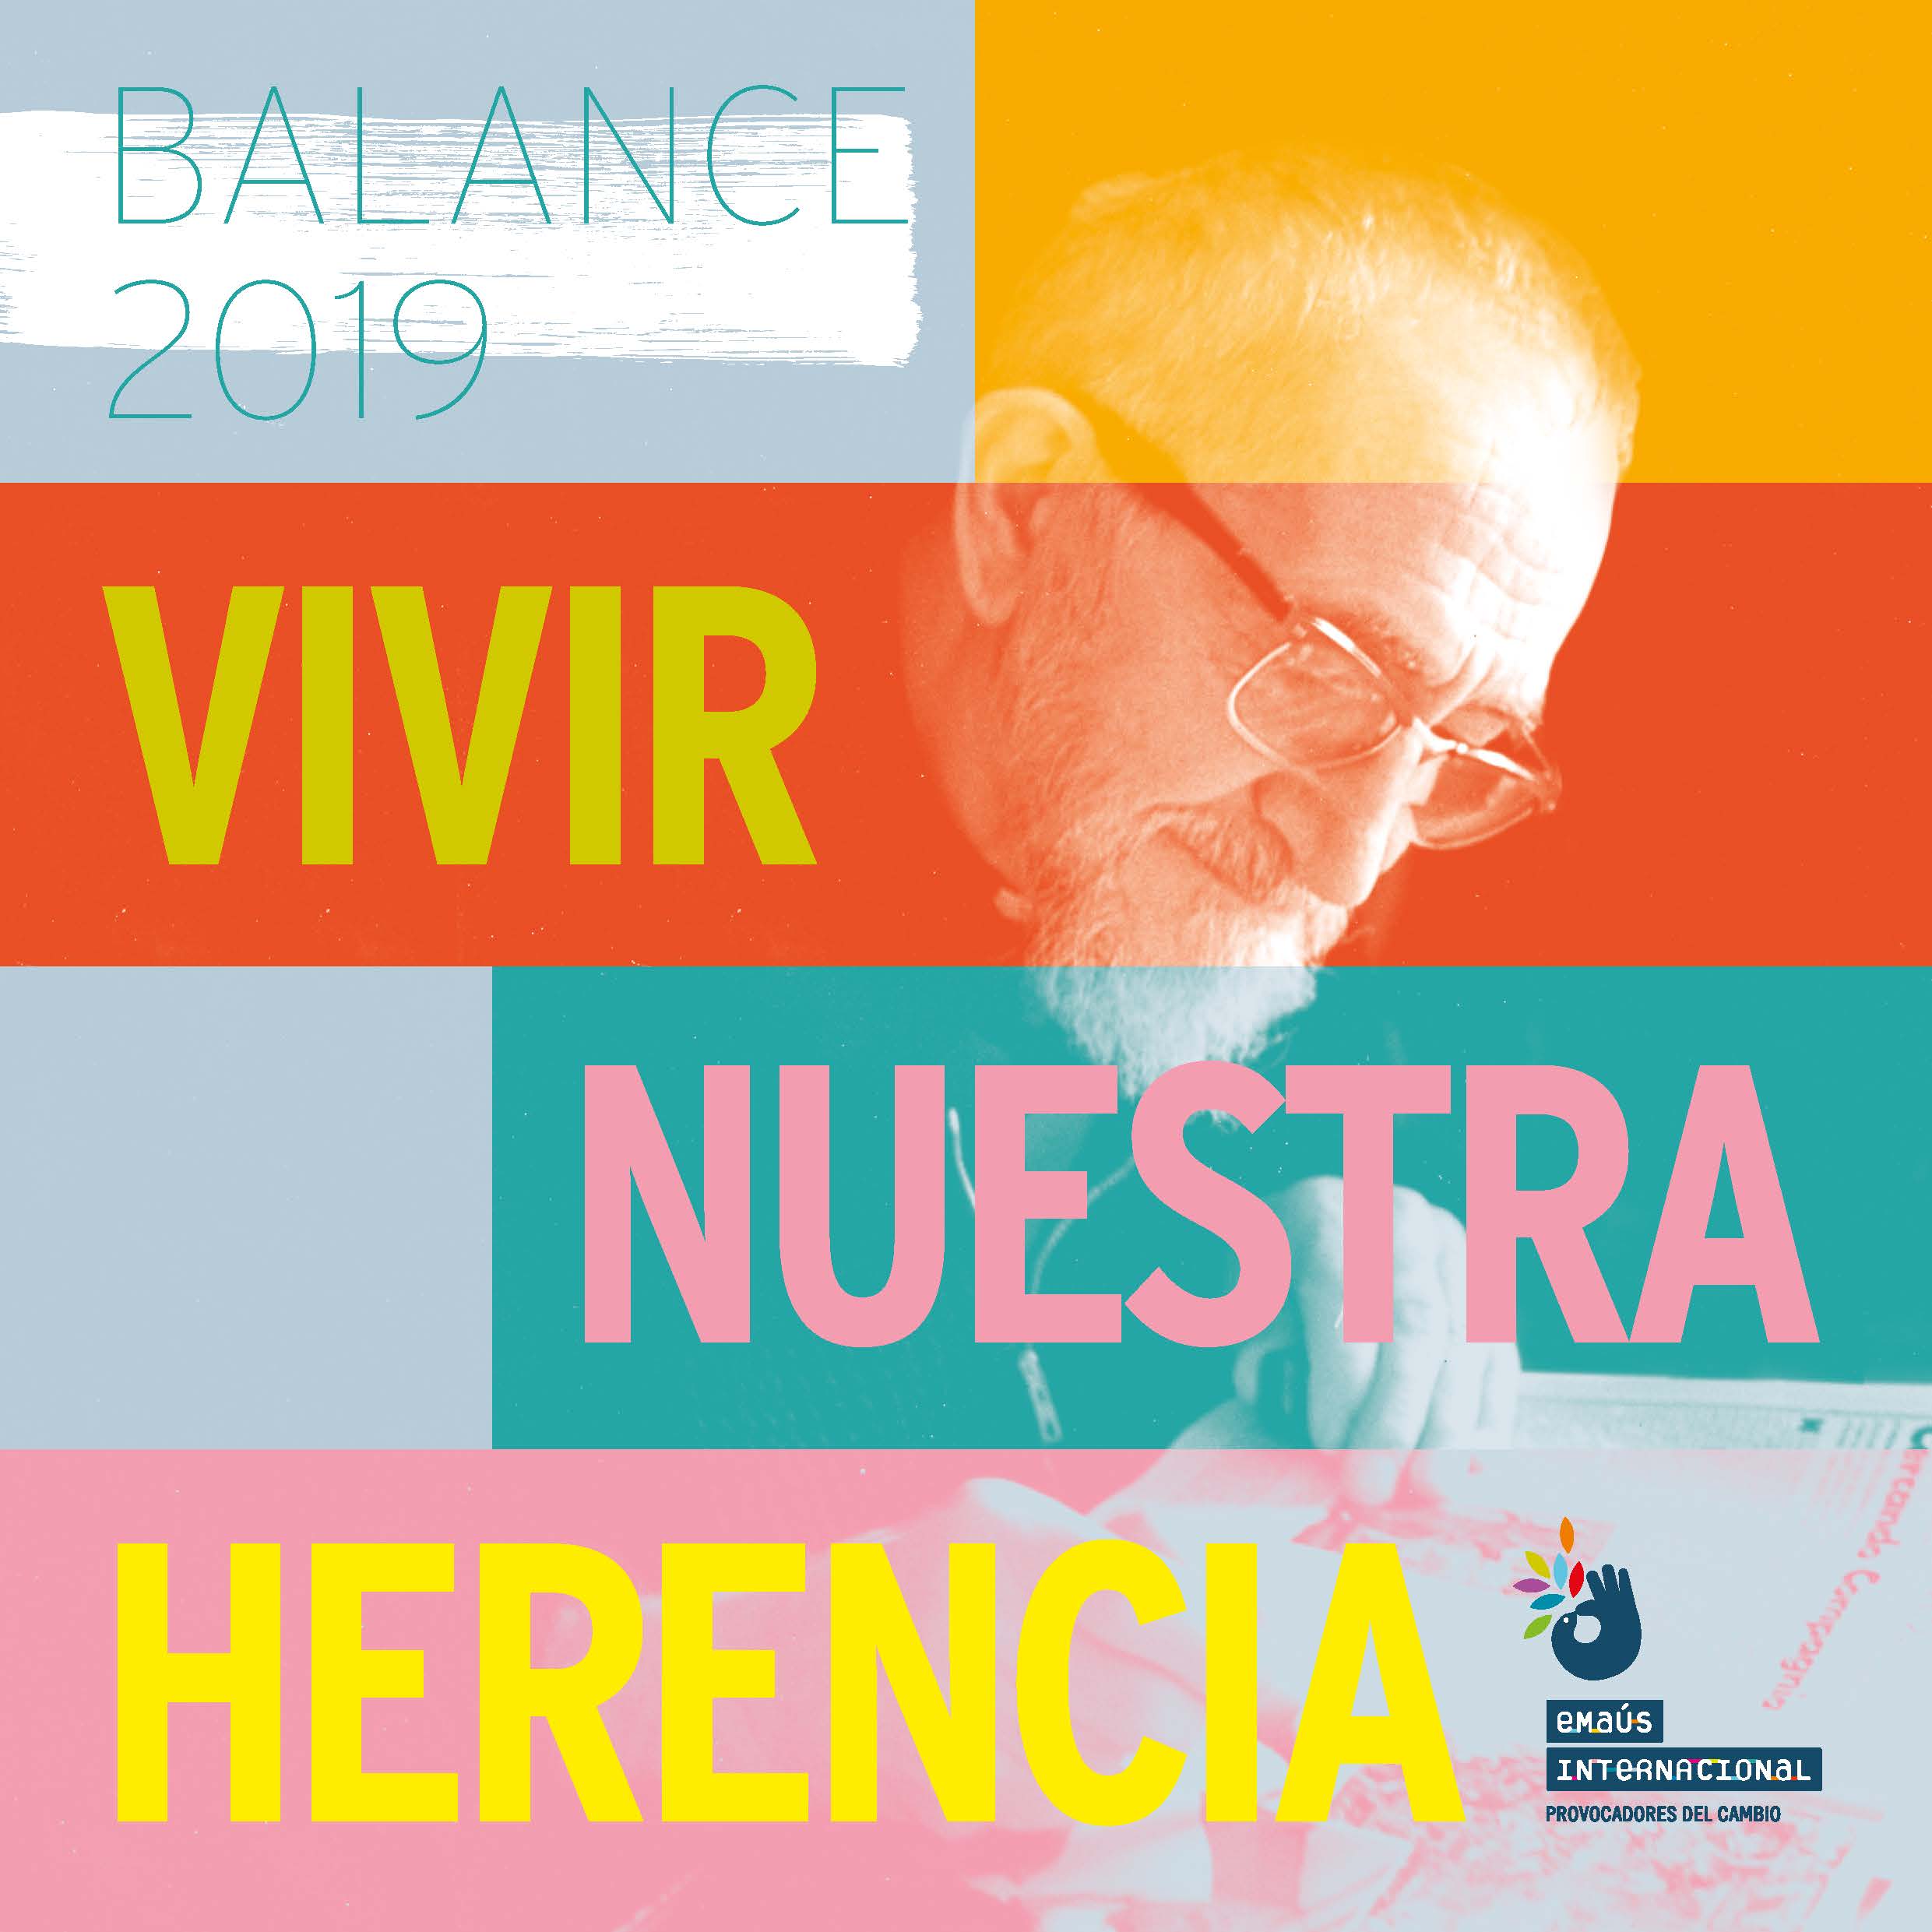 Balance 2019 «Vivir nuestra herencia» - El trabajo sobre la memoria de Emaús Internacional